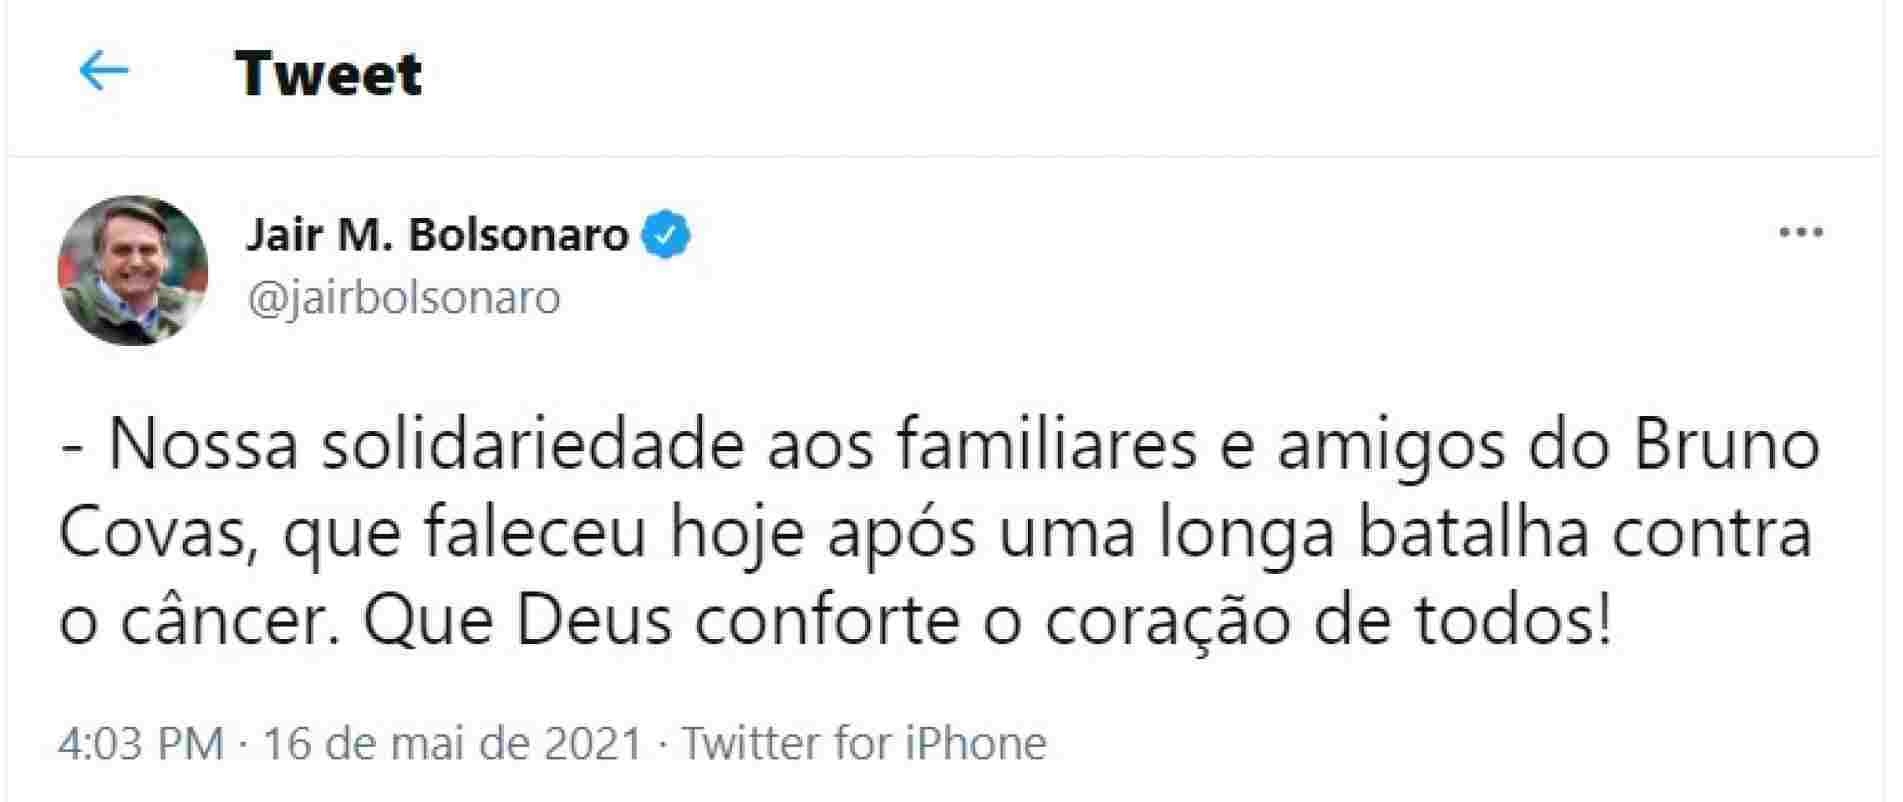 No Twitter, Bolsonaro presta solidariedade à família de Bruno Covas